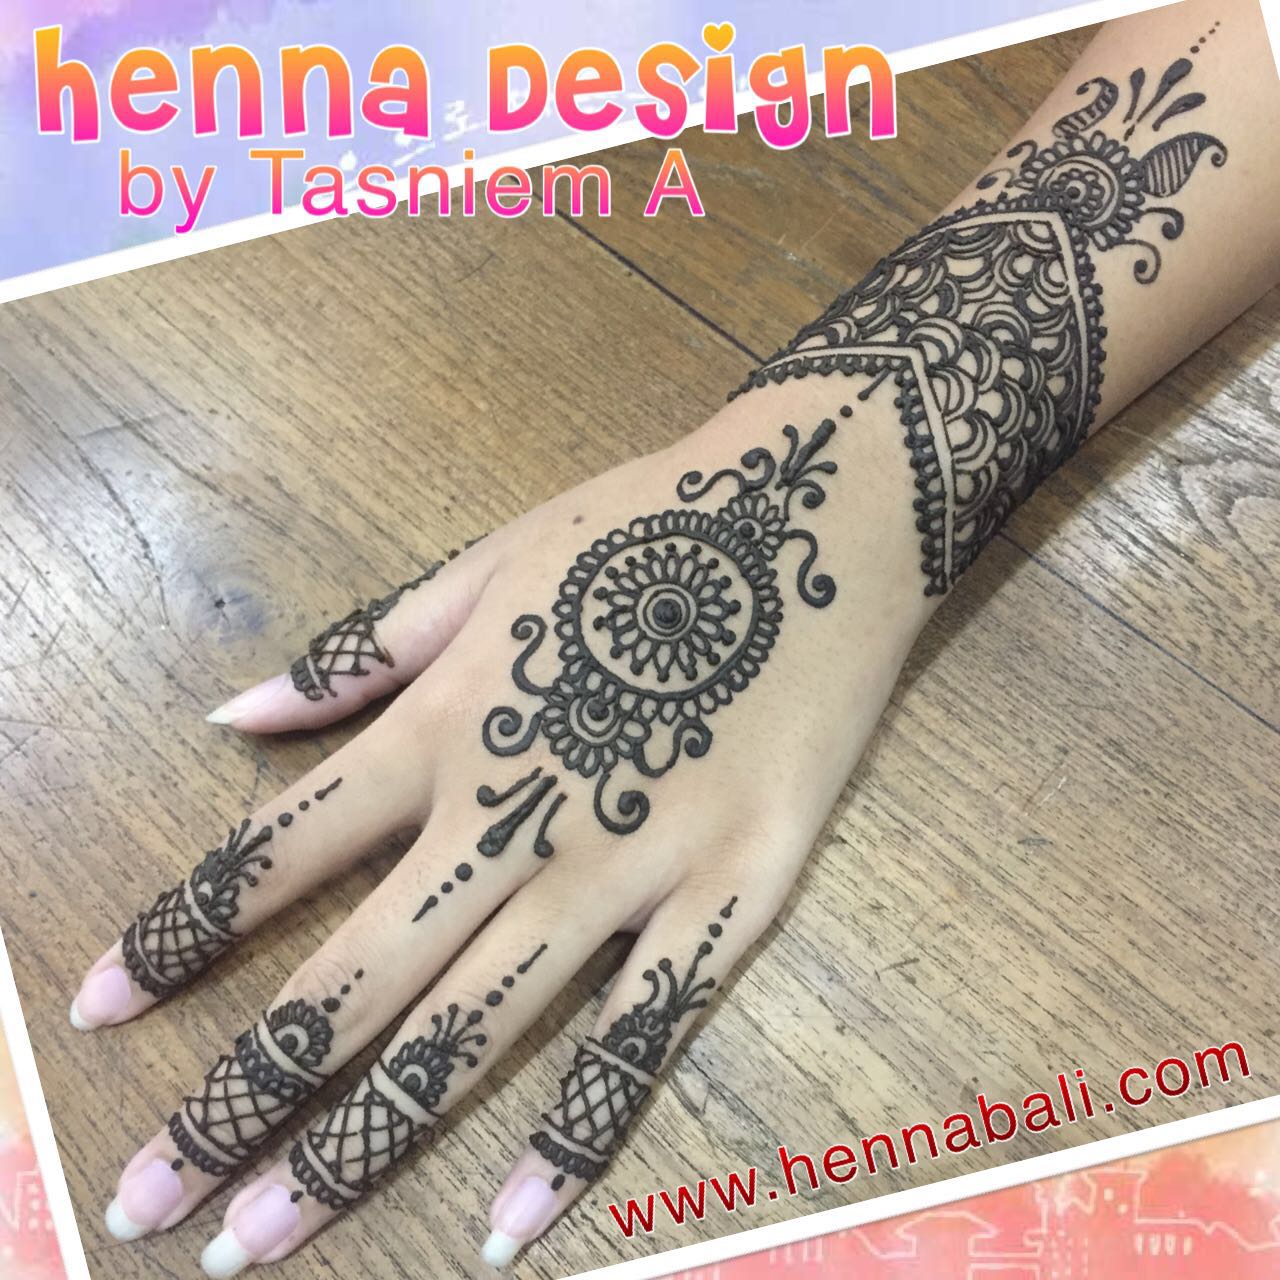 Henna Bali NATURAL HENNA TATTOOS IN BALI